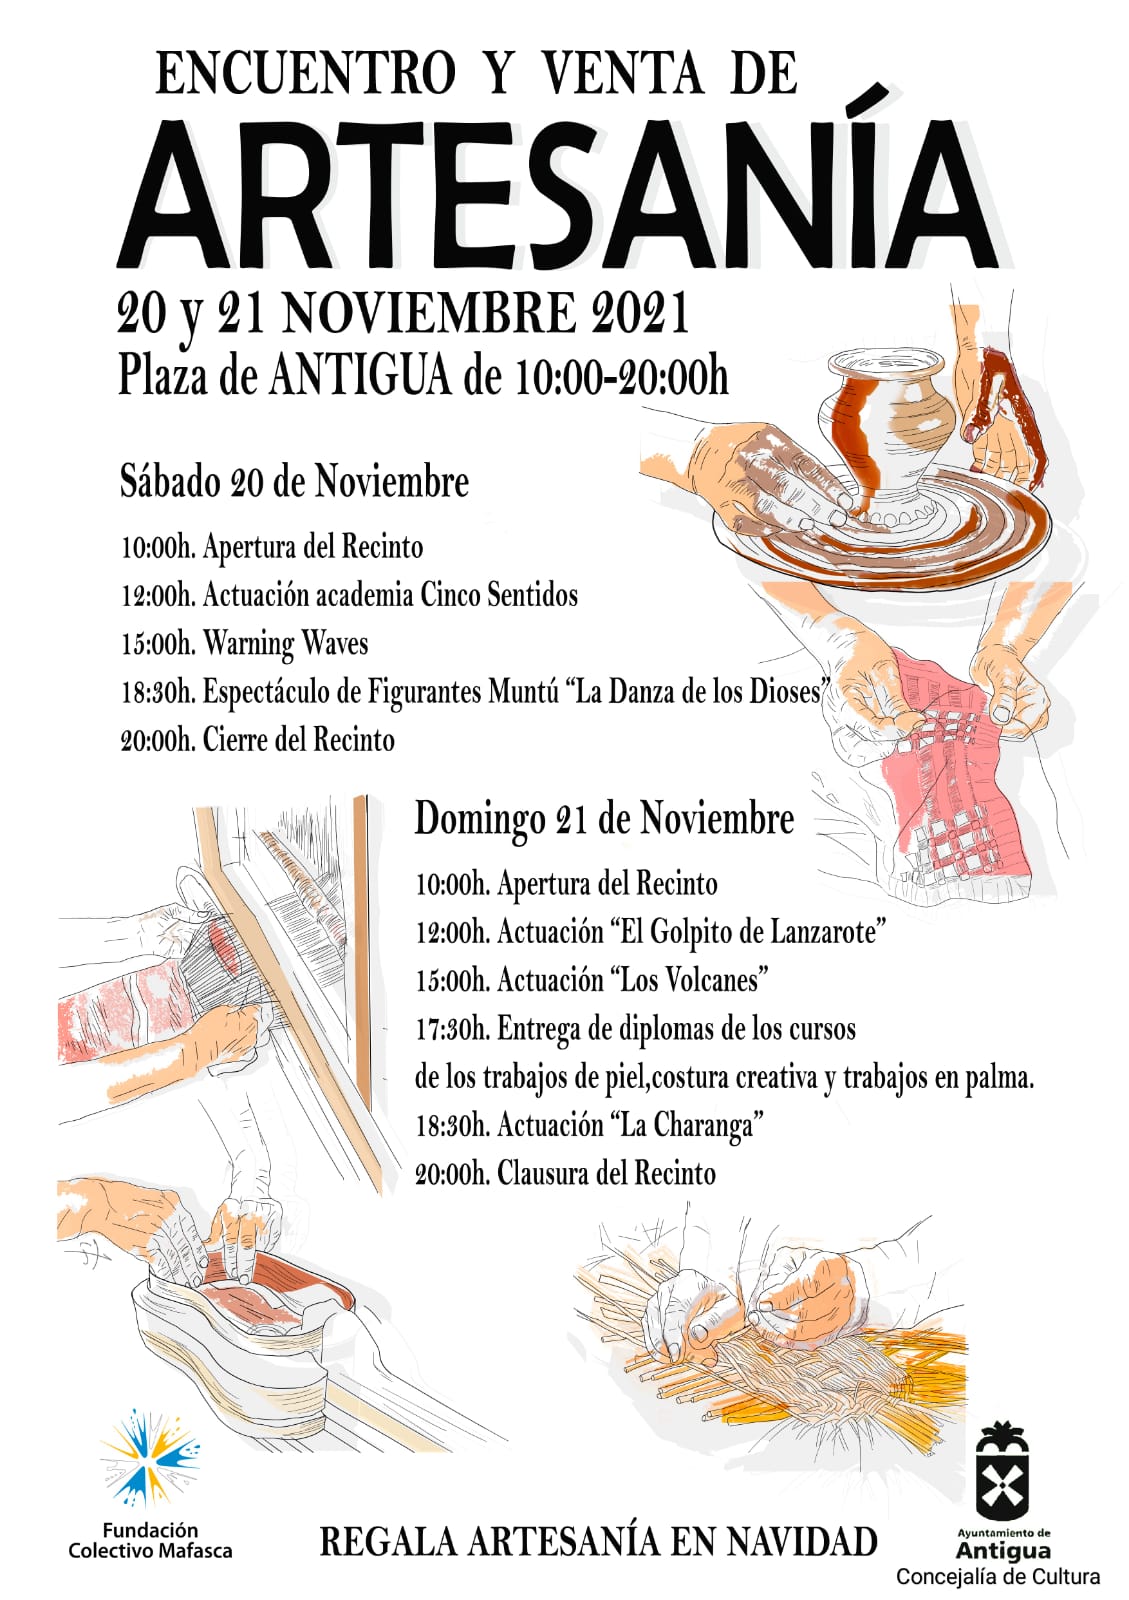 El Encuentro y Venta de Artesanía en Antigua presenta un cartel de espectáculos y actuaciones